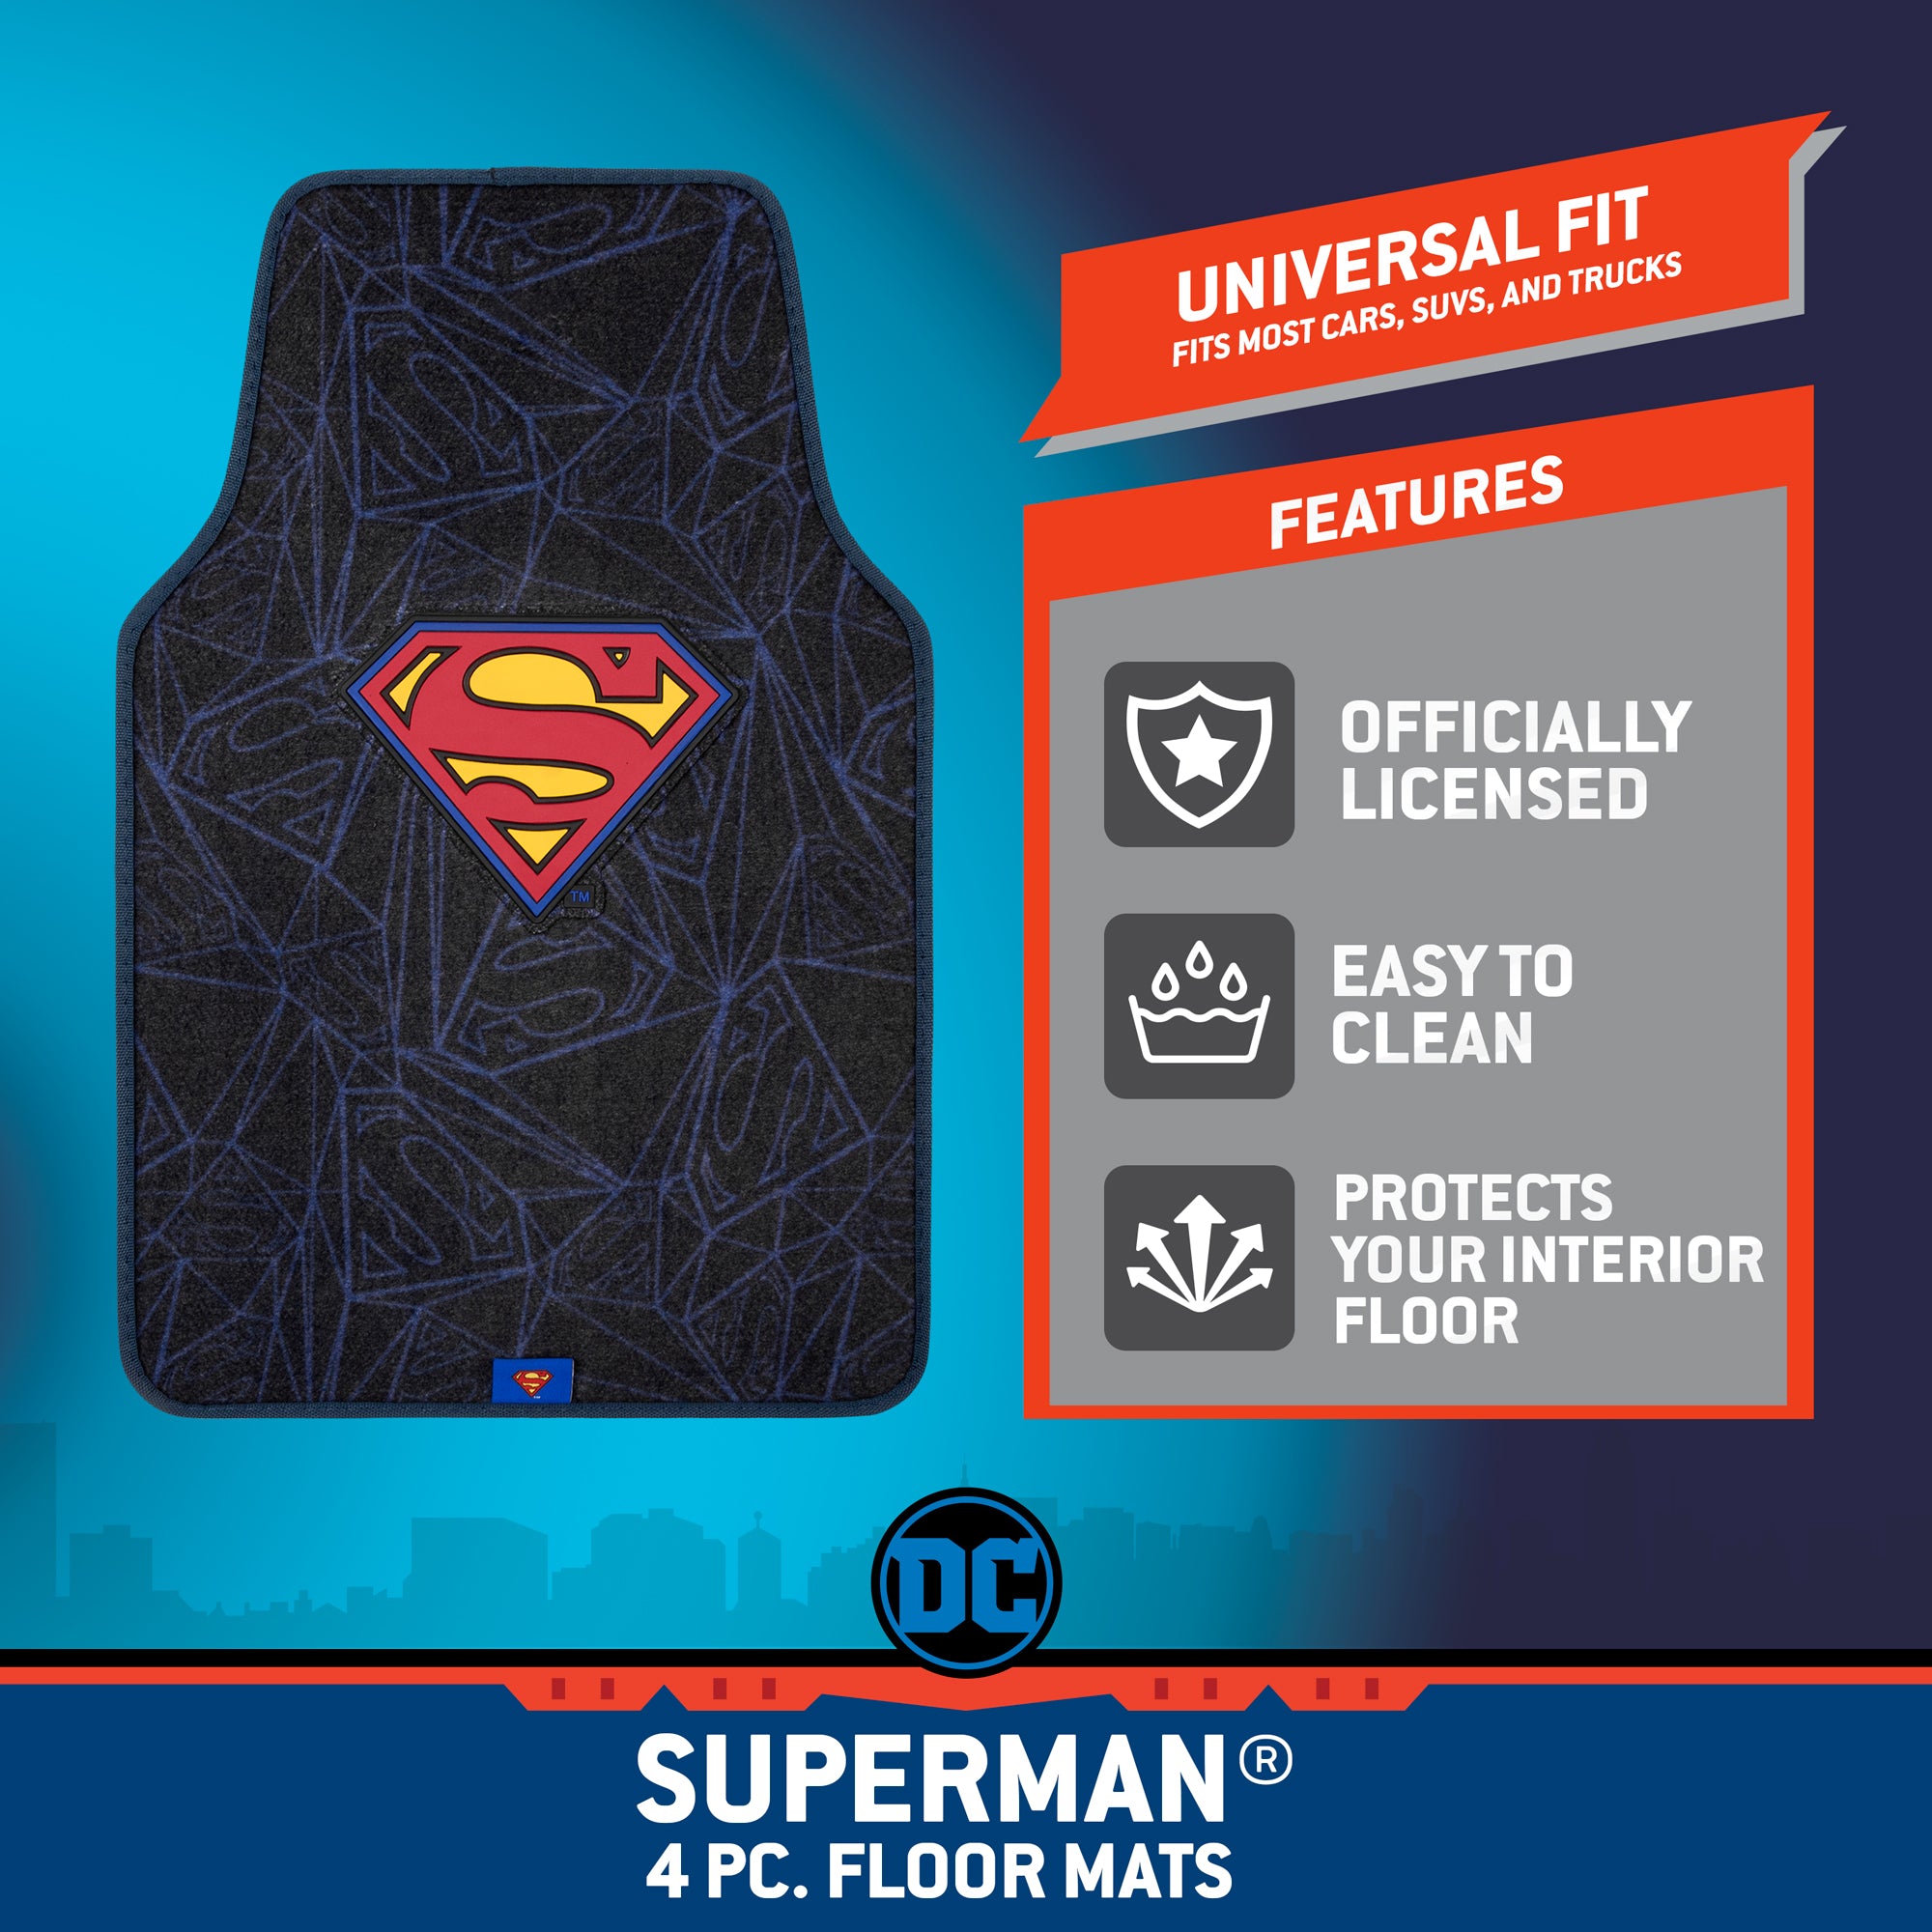 Superman Carpet Car Floor Mats, DC Comics Design, for Car, Truck, SUV - Comfortable, No Slip Nib Backing, Unique Full Print, Protects Car Floor